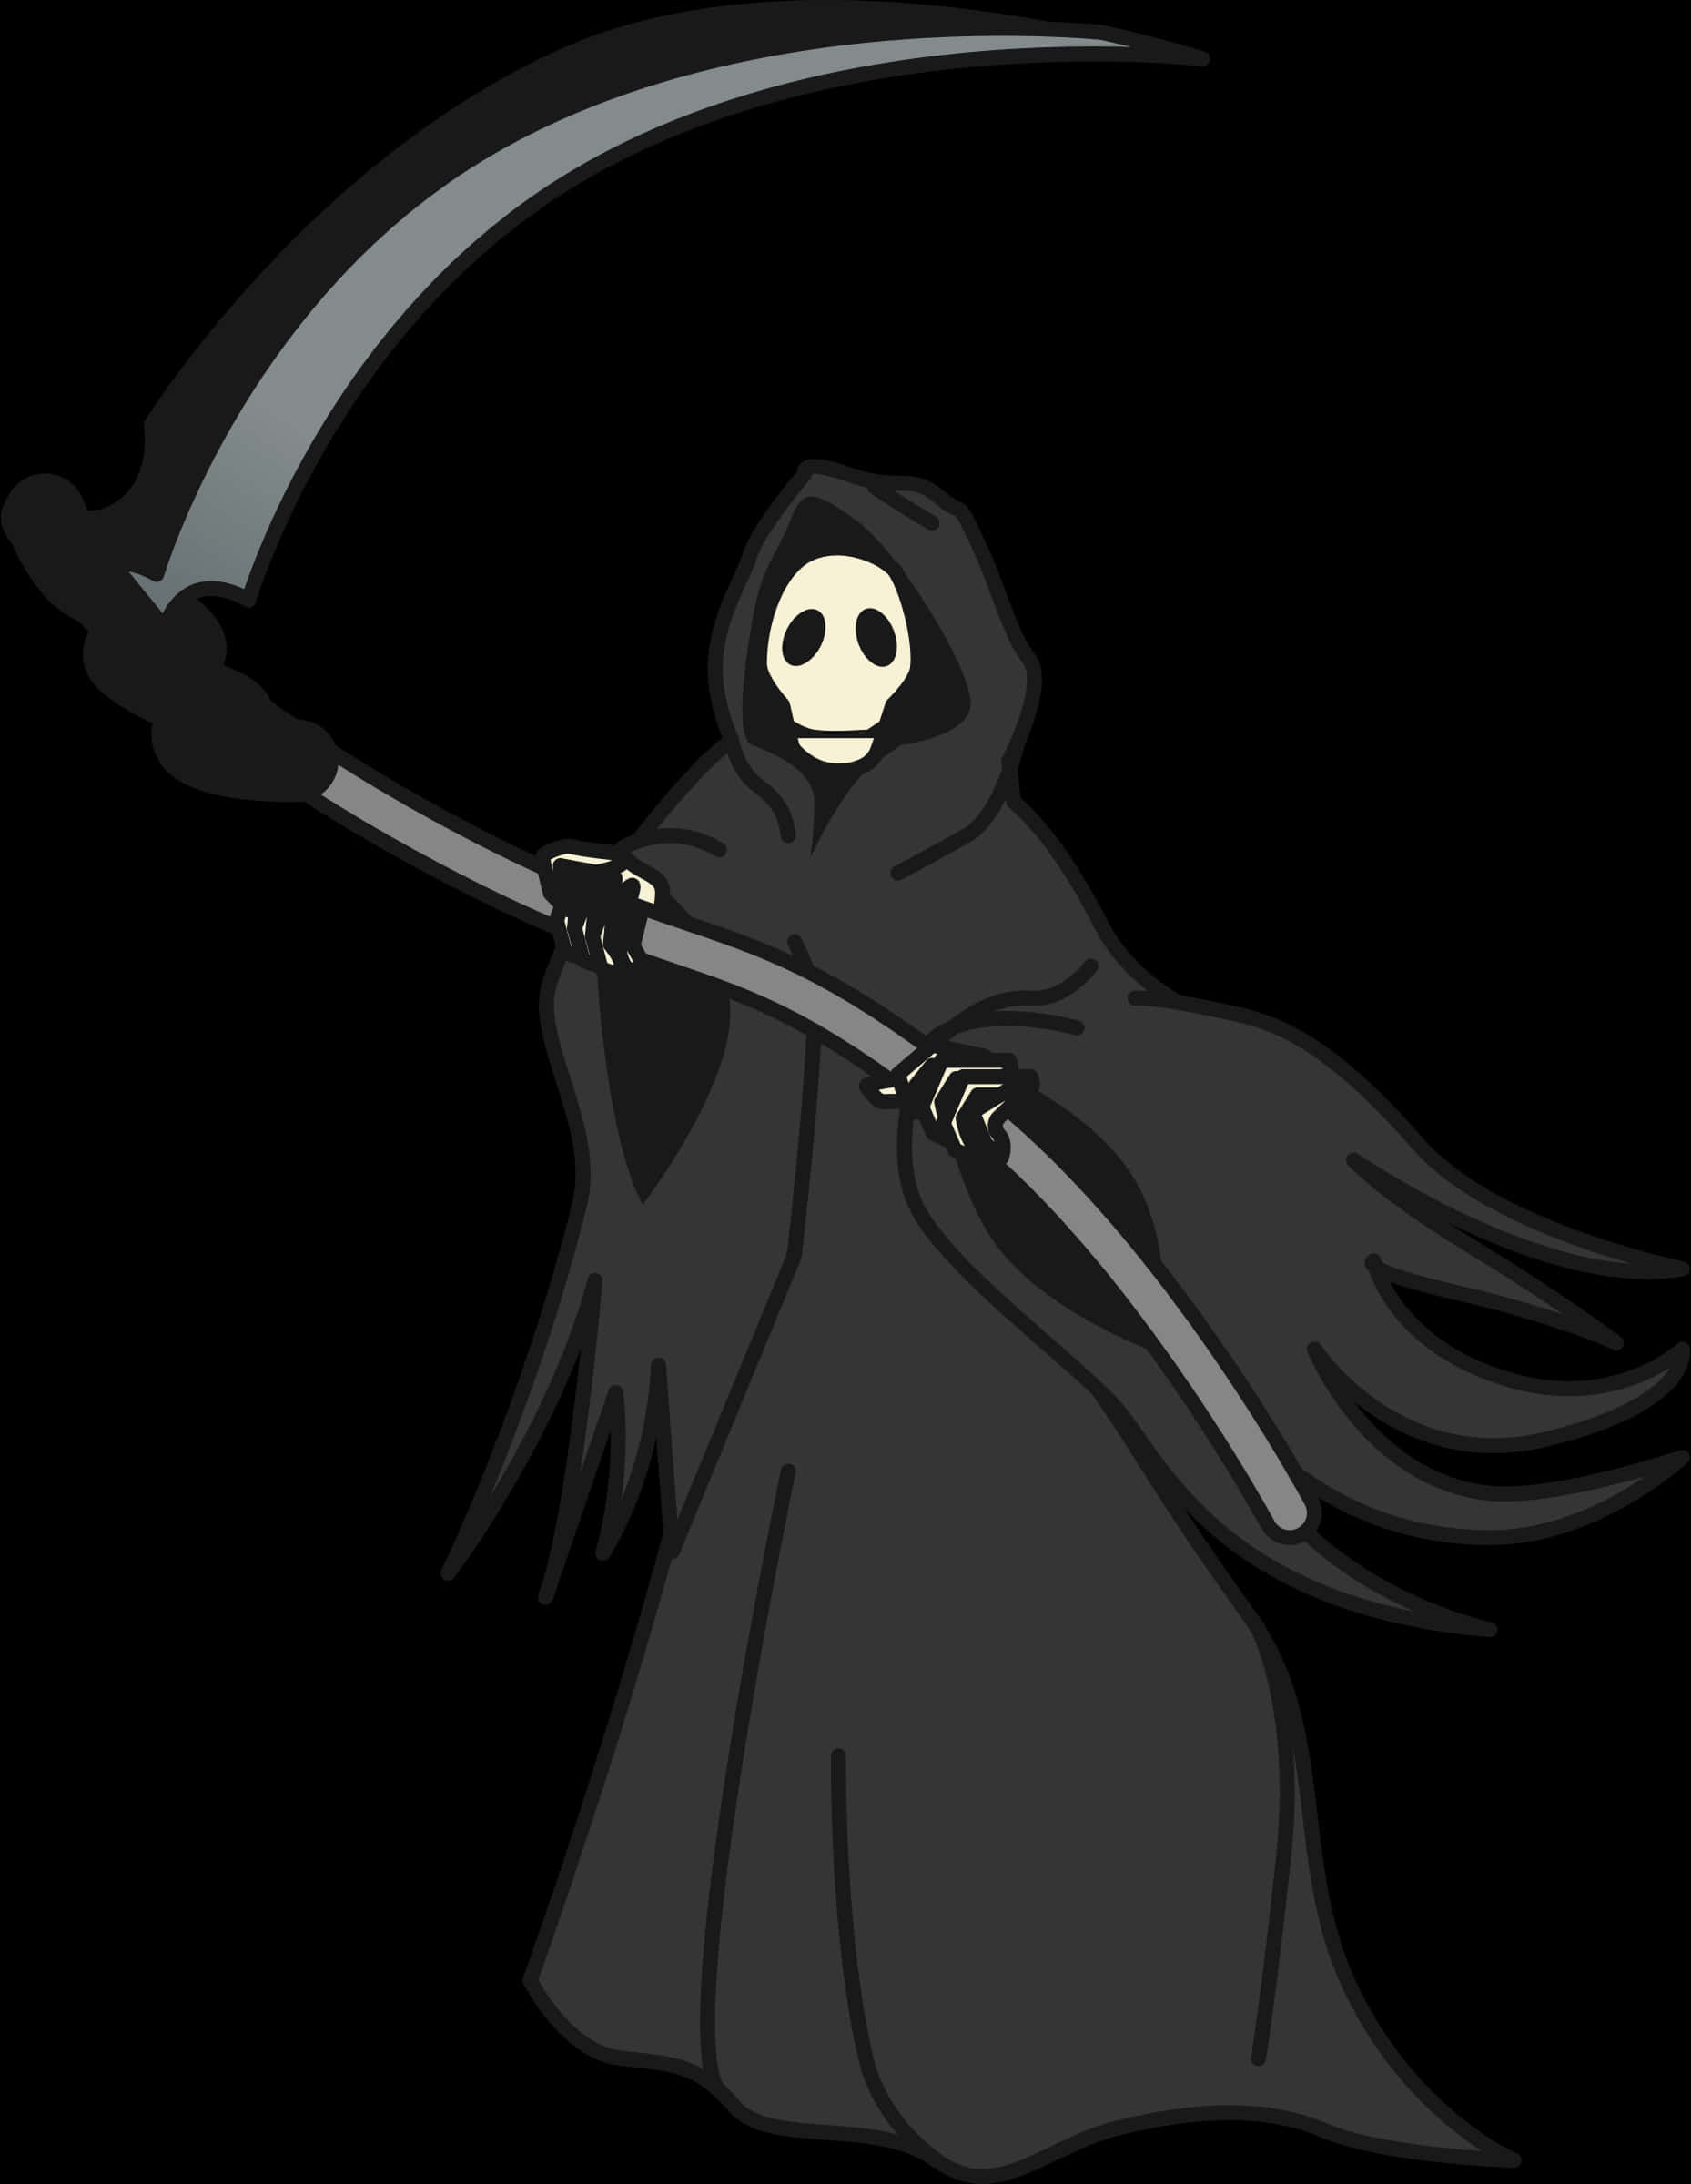 Download Grim Reaper Cartoon Illustration | Wallpapers.com